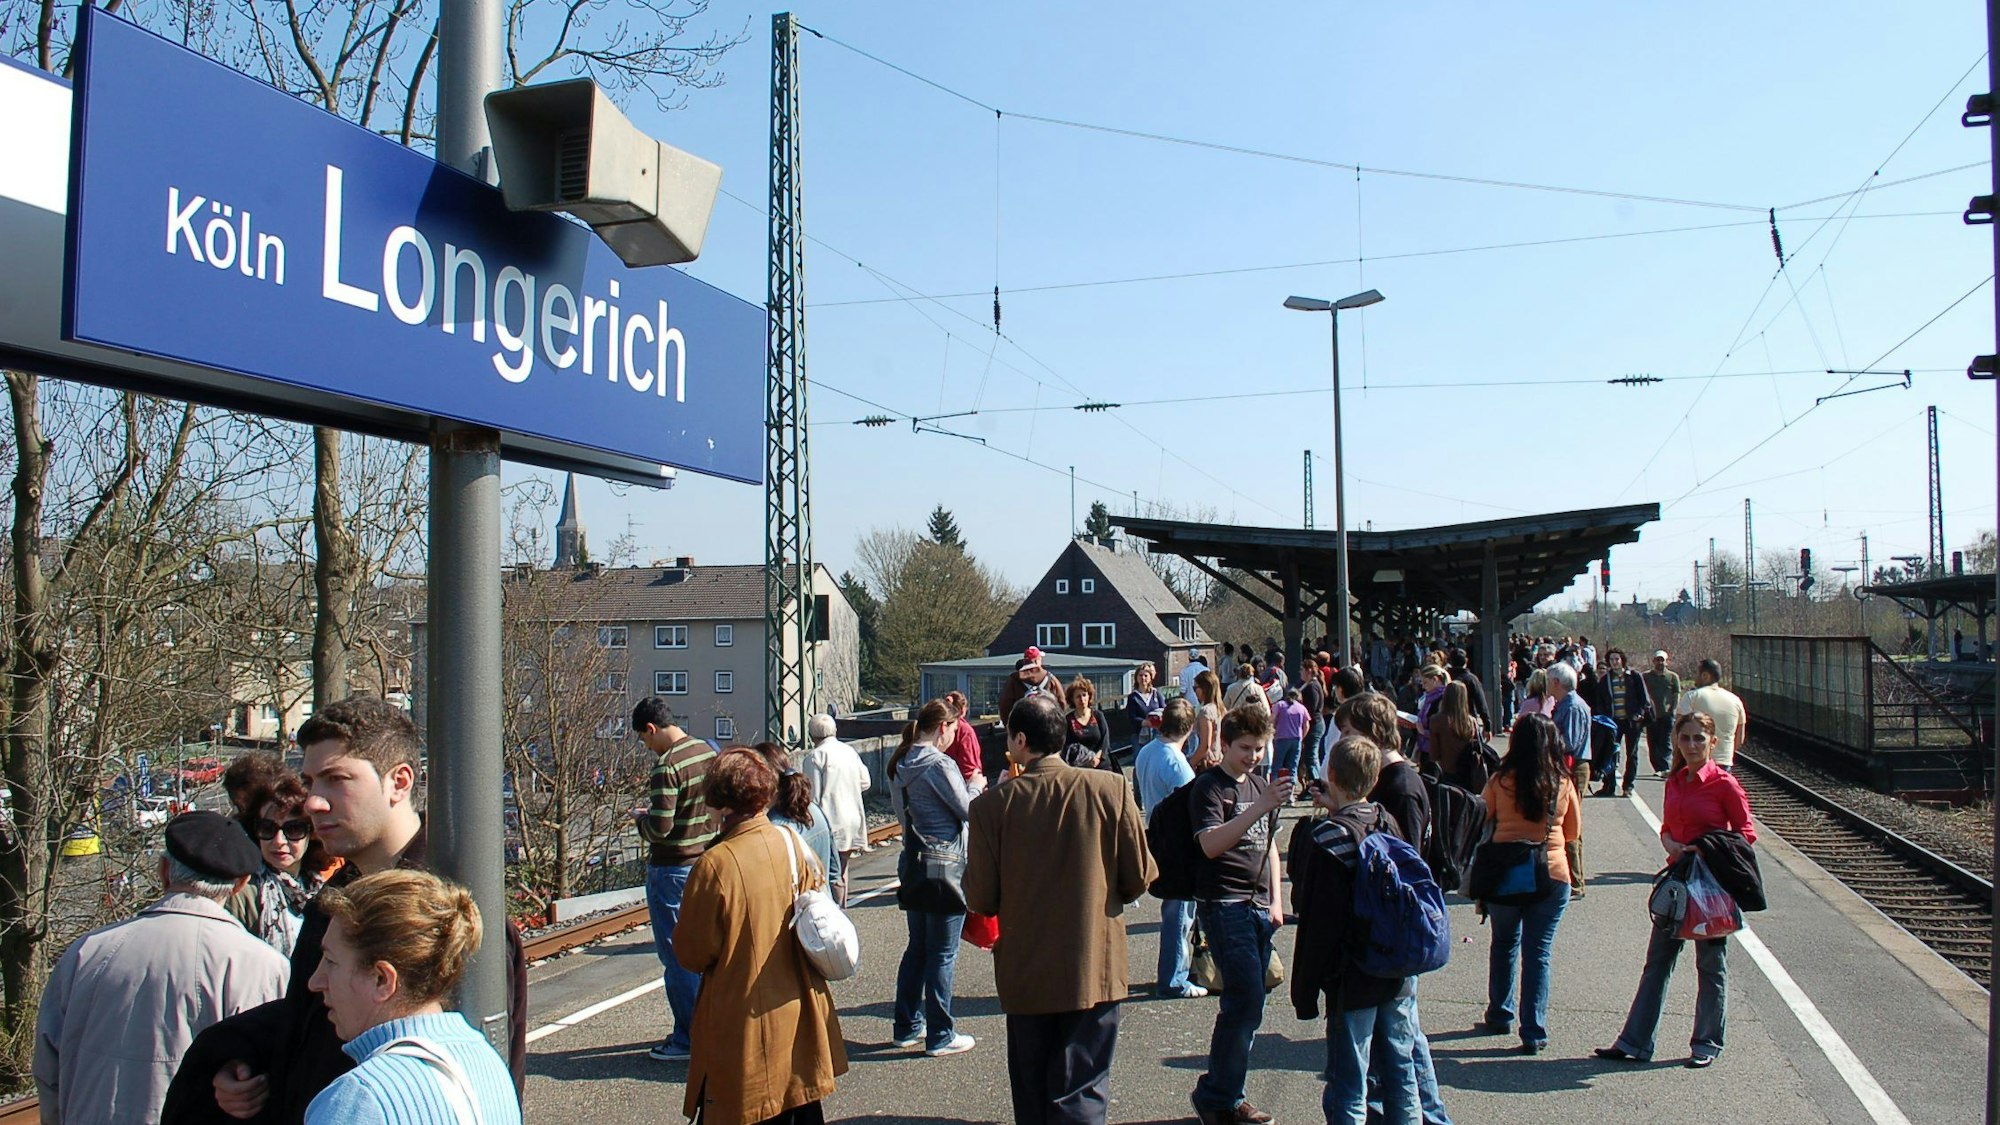 An der S-Bahnstation Longerich stehen viele Passagiere und warten auf die Bahn.